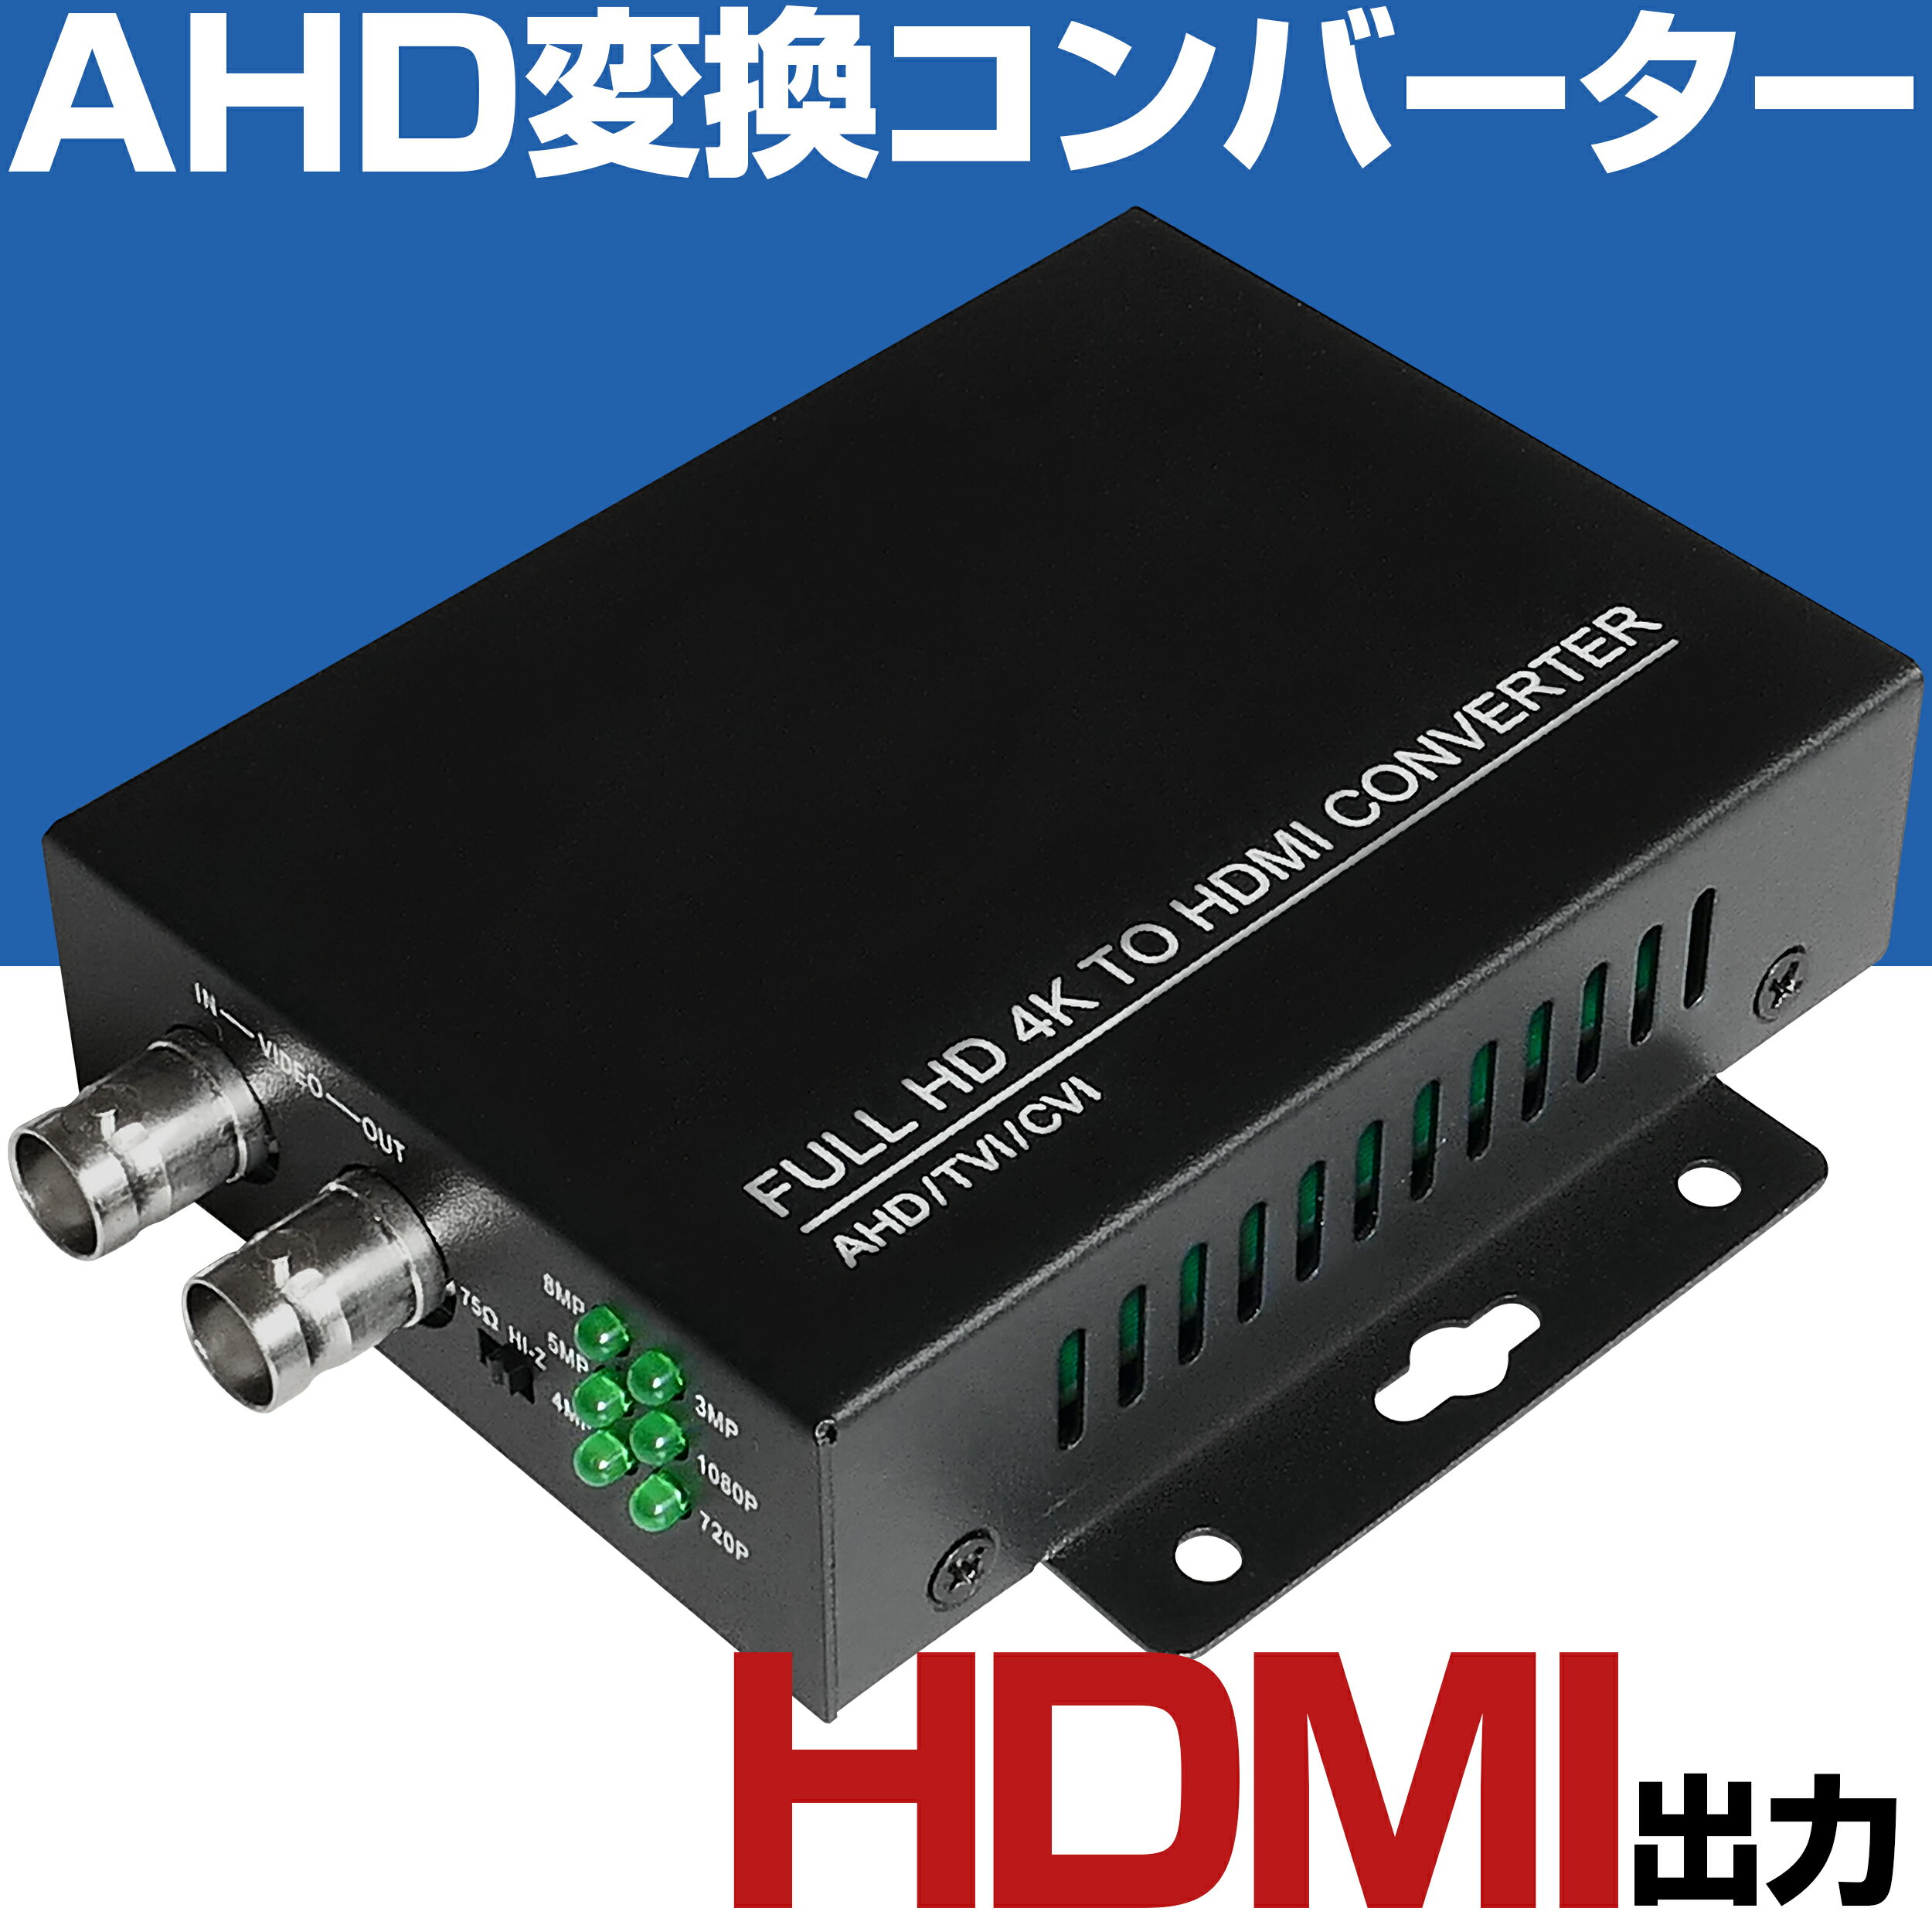 AHDカメラ(TVI/CVI)変換コンバーター AHD映像を直接モニターで見るための変換機です。 AHD変換コンバーターを使えば、AHDカメラのライブ映像を直接モニターで監視することが出きます。 AHDカメラだけではなく、TVI、CVIカメラの映像も直接モニターで見ることができます。 AHDカメラの映像をモニターで見るにはAHD対応録画機が必要でしたが、AHD変換コンバーターによりこの問題を解消しました。 HDMIケーブルを通じて、フルハイビジョン1080Pのライブ映像をモニターに表示します。 ※HDMIケーブルは付属しておりません。別途お買い上げが必要です。 AHD変換コンバーターを使えば、お持ちのアナログ録画機でも、AHDカメラの映像をモニタリングしながら、同時に録画することができます。 ※録画機とAHD変換コンバーターの接続は、付属のBNCケーブルを利用します。 AHD変換コンバーターを2つ利用すれば、別々の離れた場所でも、1台のAHDカメラのライブ映像を、モニター2台で同時に監視することができます。 ※AHD変換コンバーターとAHD変換コンバーターの接続は、別途BNCケーブル(10m/20m/30m/50m/100m)をオプションでお買い上げ頂けます。【選択項目の追加料金について】 選択項目の追加分の価格については、買いものカゴや楽天市場から届きます初回の自動サンクスメールに反映されません。 当店で処理後、2回目に届くサンクスメールに反映されます。 【領収書の発行について】 領収書の発行については、注文履歴の中に「領収書発行する」ボタンがございますので、そこから発行してプリントして頂けるようお願いします。 紙での領収書については、ご注文時のみお受け致します。ご注文時以後の発行は、致しませんので御了承くださいませ。 クレジットカード購入(5万円以上)による領収書発行について、弊社では収入印紙の貼り付け発行はしておりません。 代金引換でのご注文の場合は、発送伝票控えが領収書となります。 【お客様都合による交換・返品】 商品到着日から起算して1週間以内にご連絡を頂いた場合に限り、返品・交換対応をさせて頂きます。 明らかに使用された形跡がみられるものについては交換・返品対応をお断りさせて頂きます。 商品未使用(新品)の状態かつ、商品到着時に同梱されていた全て(付属品、商品パッケージ、緩衝材、説明書、お買い上げ明細書など)が揃っていることが条件となります。 返品・交換にかかる送料や発送送料、代引手数料、振込手数料はお客様のご負担となります。 送料無料商品については、発送時の送料もお客様のご負担となります。 【沖縄・離島・一部地域への送料と中継料金】 沖縄・離島・一部地域へご発送で、9,800円(税込)未満のご注文については送料と中継料金が発生します。 送料と中継料金はご注文後、加算させて頂きます。2回目に届くサンクスメールにてご確認頂けます。予めご了承ください。